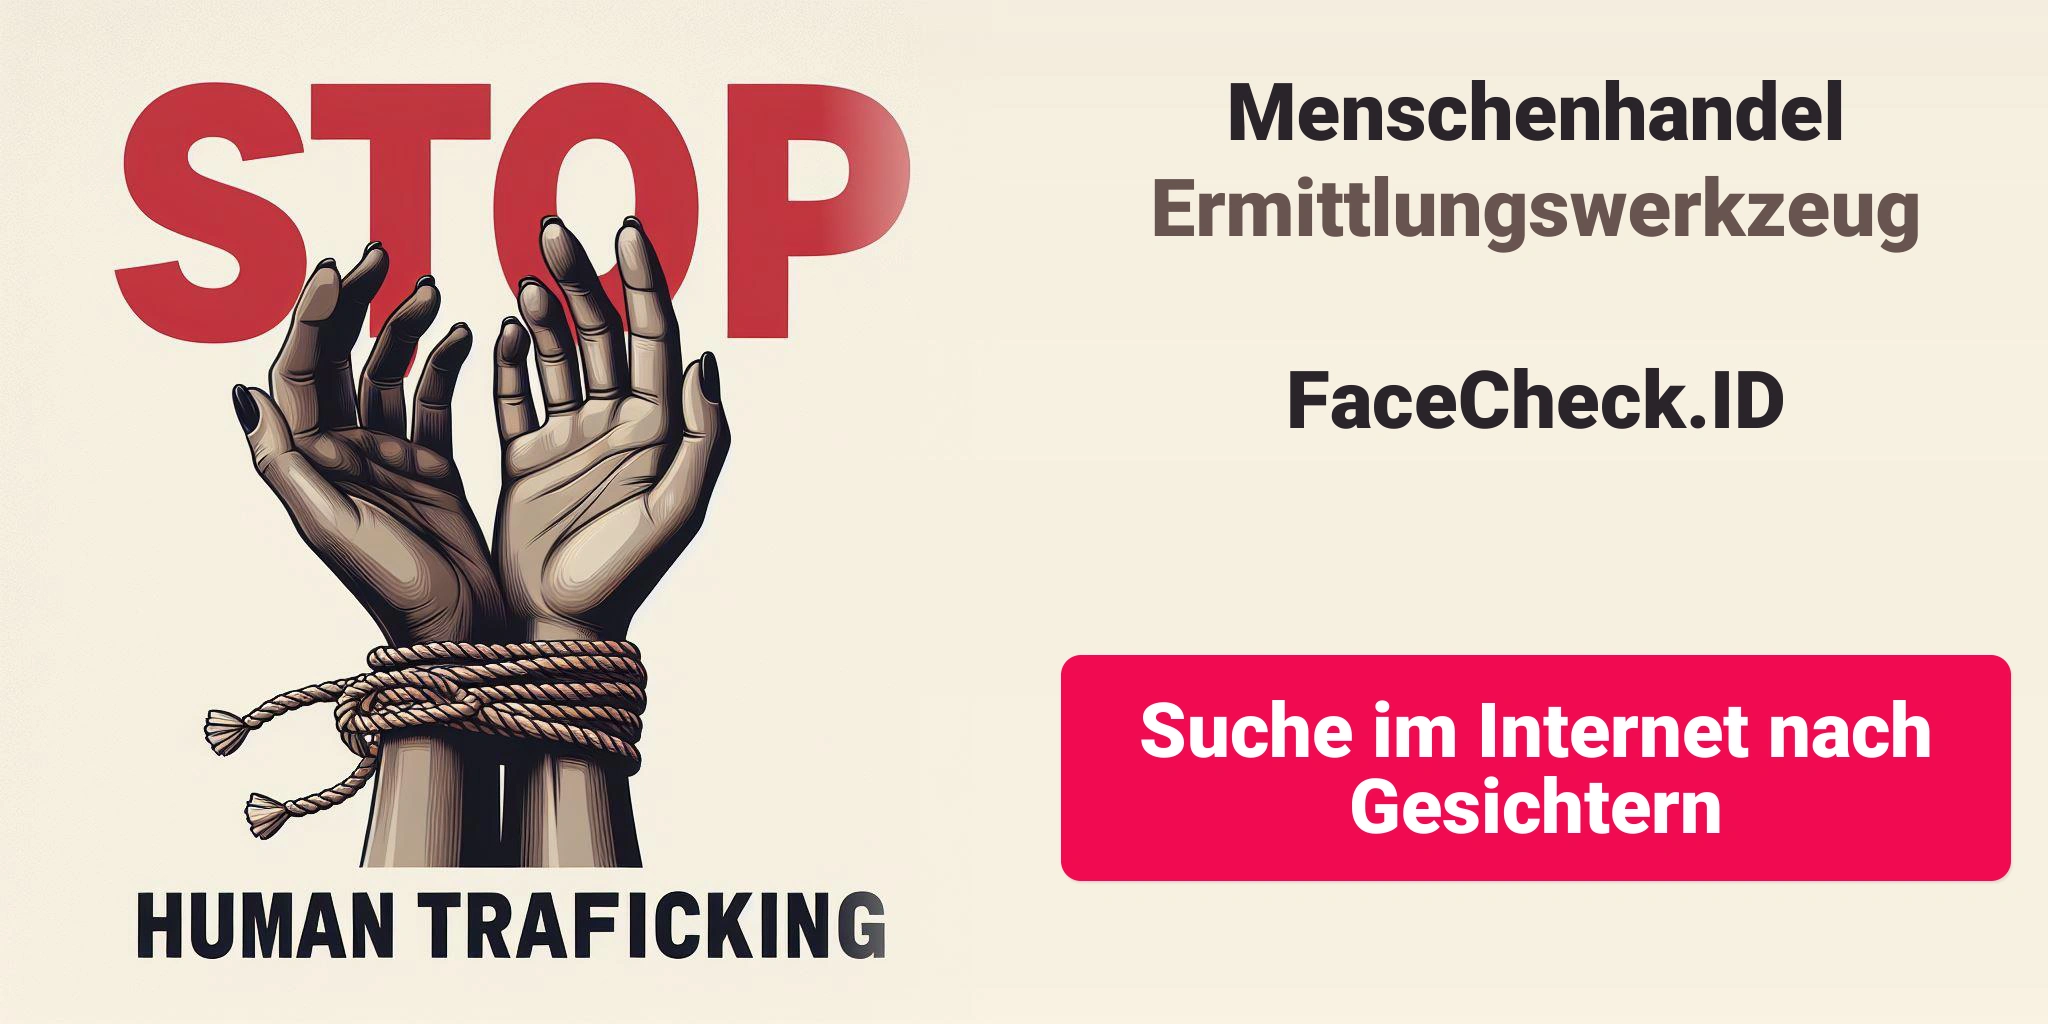 Nutzung der Gesichtserkennungstechnologie zur Bekämpfung des Menschenhandels